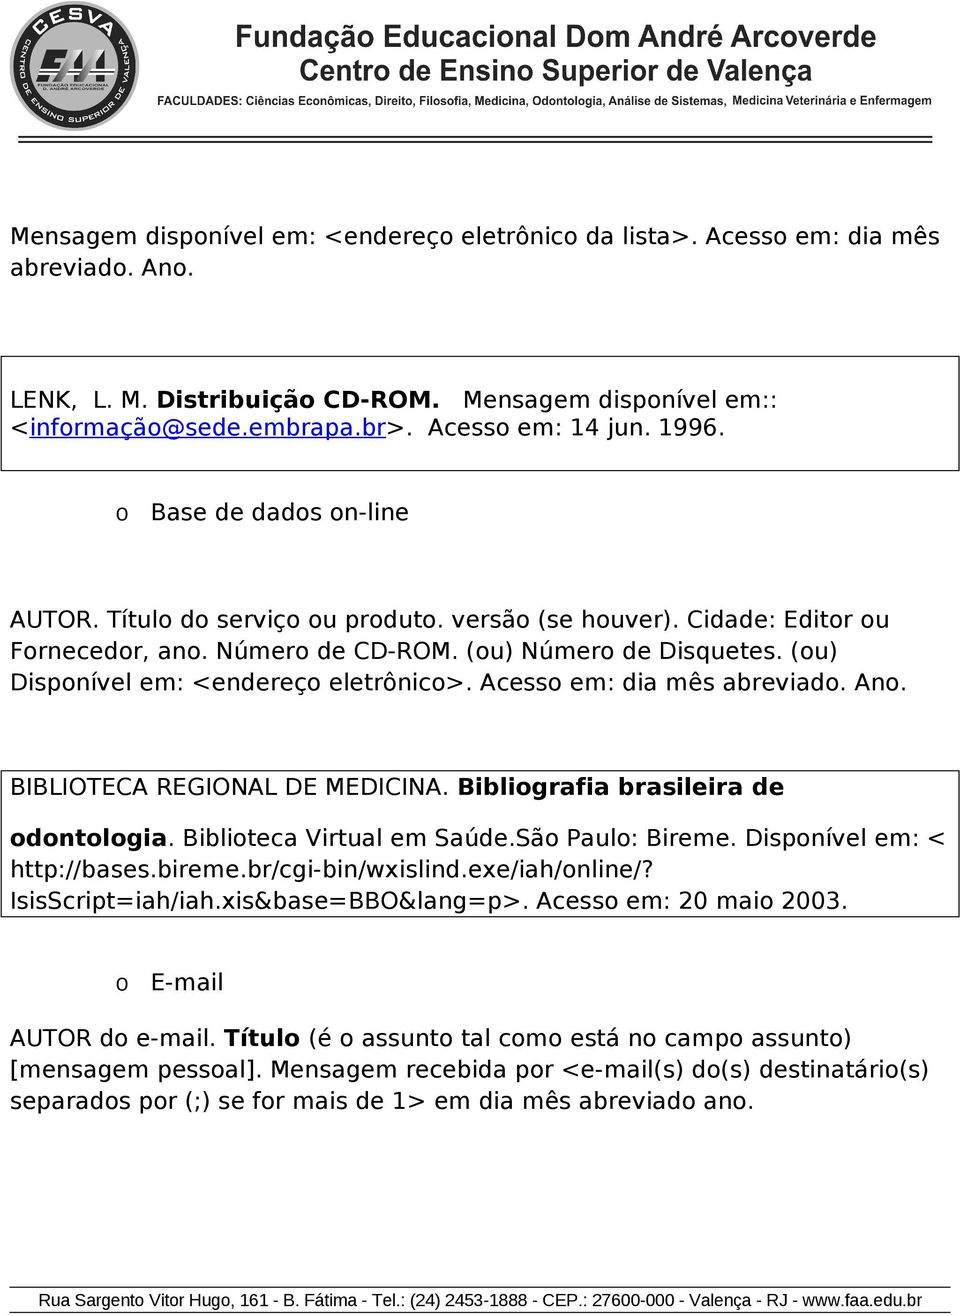 Acess em: dia mês abreviad. An. BIBLIOTECA REGIONAL DE MEDICINA. Bibligrafia brasileira de dntlgia. Bibliteca Virtual em Saúde.Sã Paul: Bireme. Dispnível em: < http://bases.bireme.br/cgi-bin/wxislind.